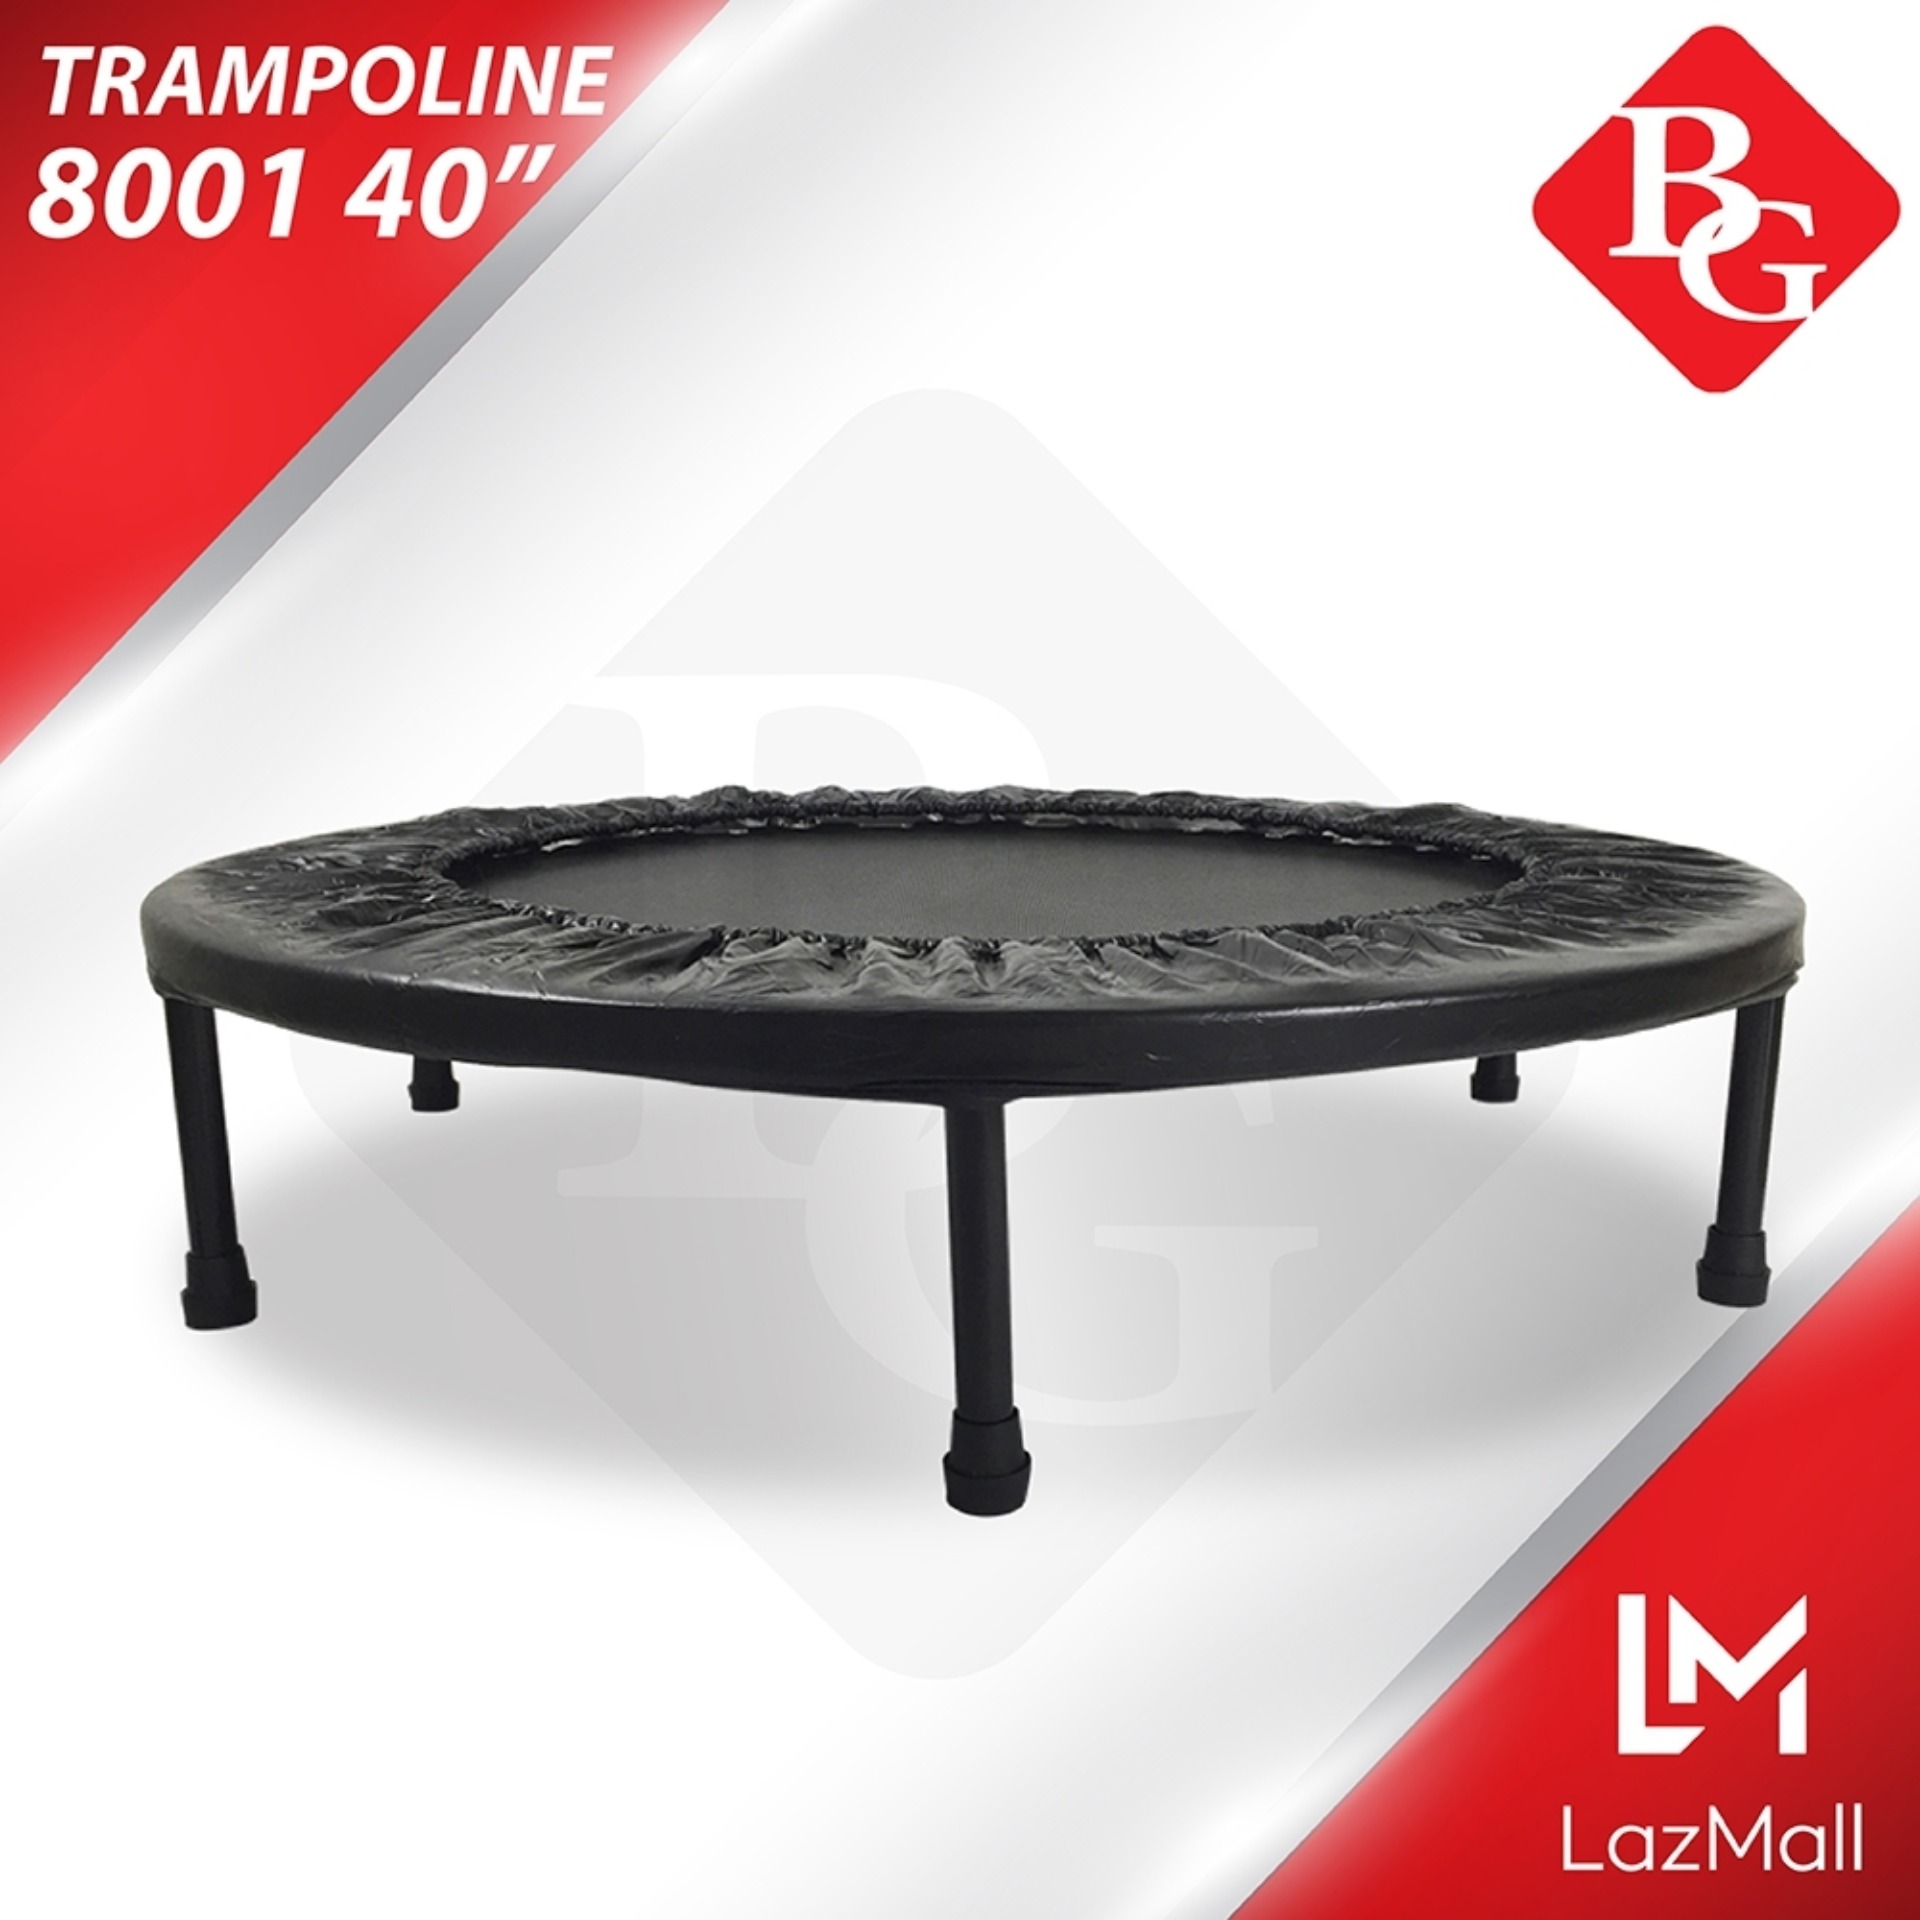 B&G trampoline รุ่น TL-8001 แทมโพลีน 40 นิ้ว (Black)